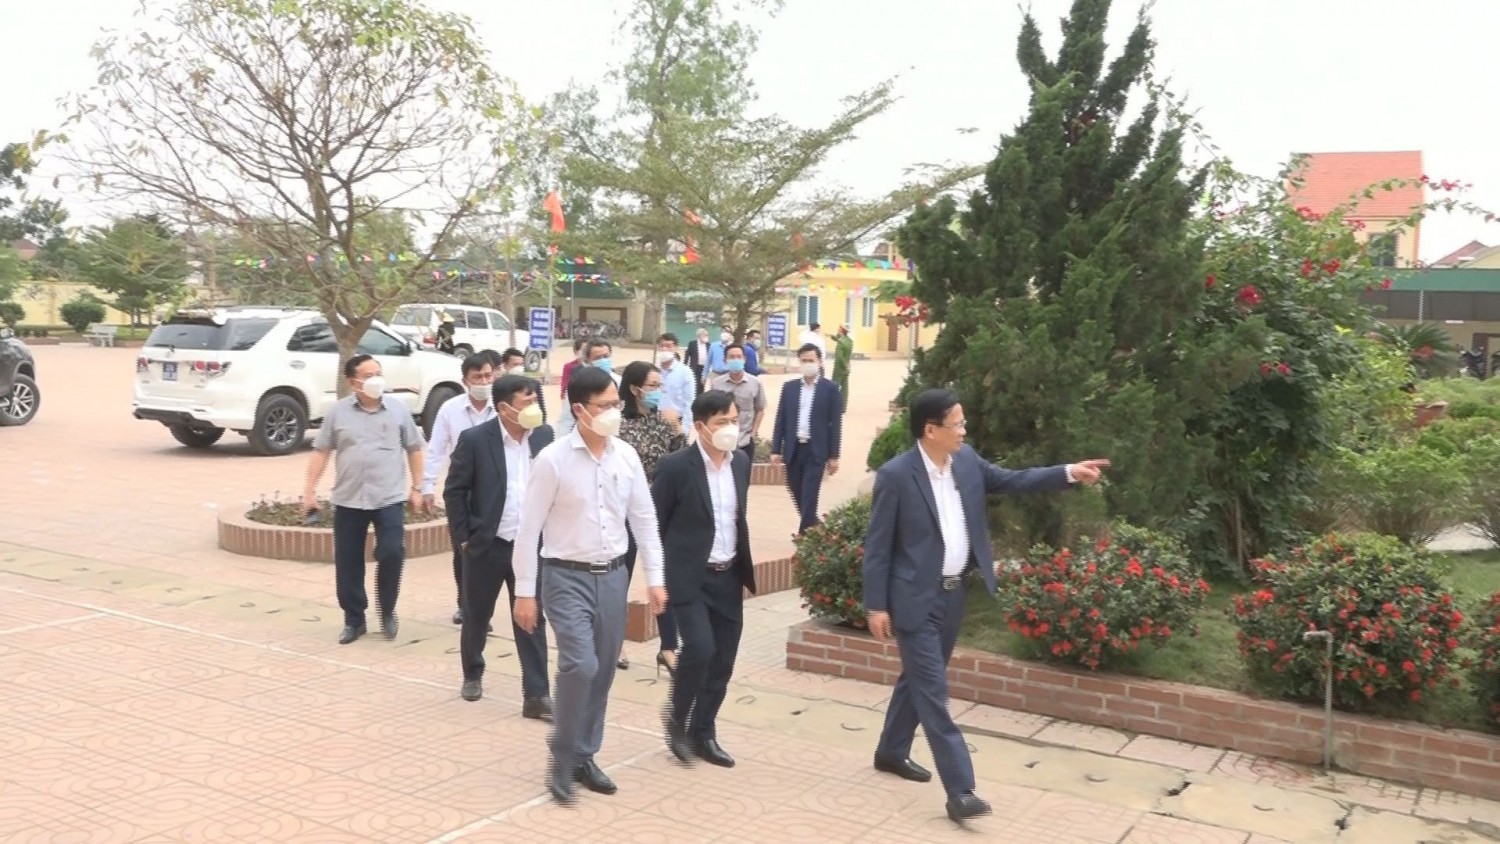 Đoàn thẩm định của tỉnh kiểm tra tại Trưởng Tiểu học Hoa Thành